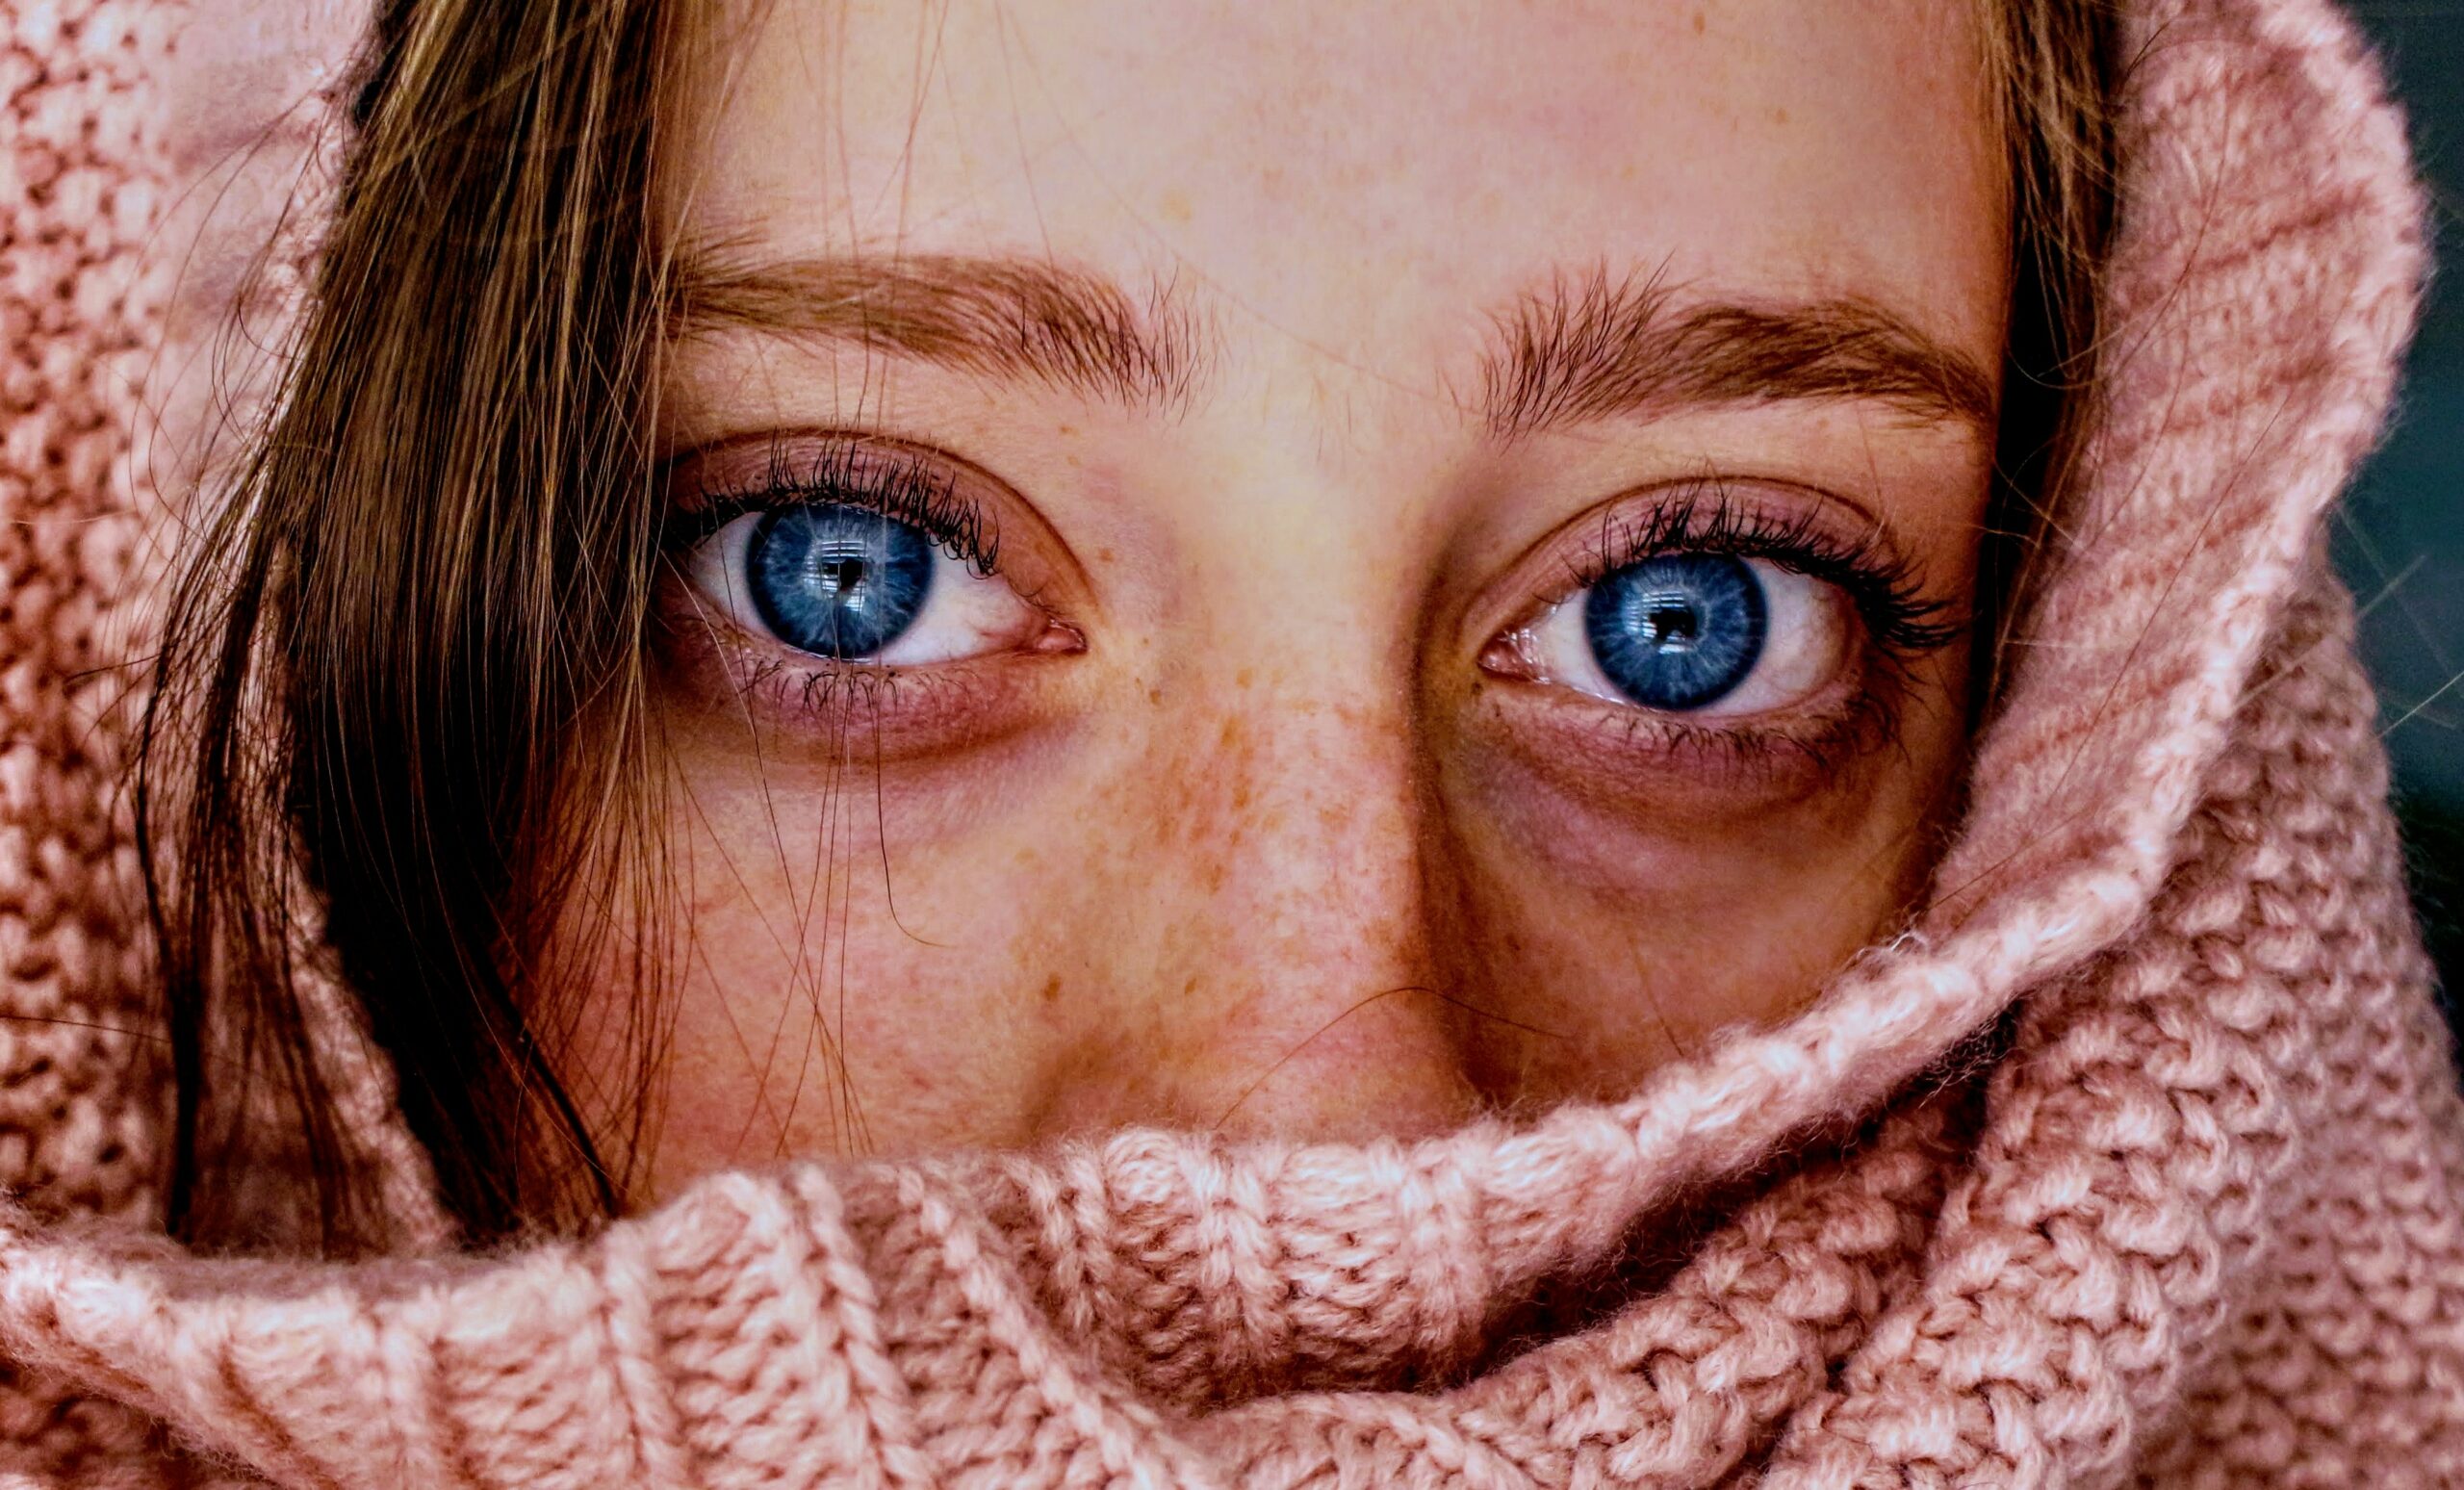 Augen entzündet: Frauengesicht mit blauen Augen und Schal